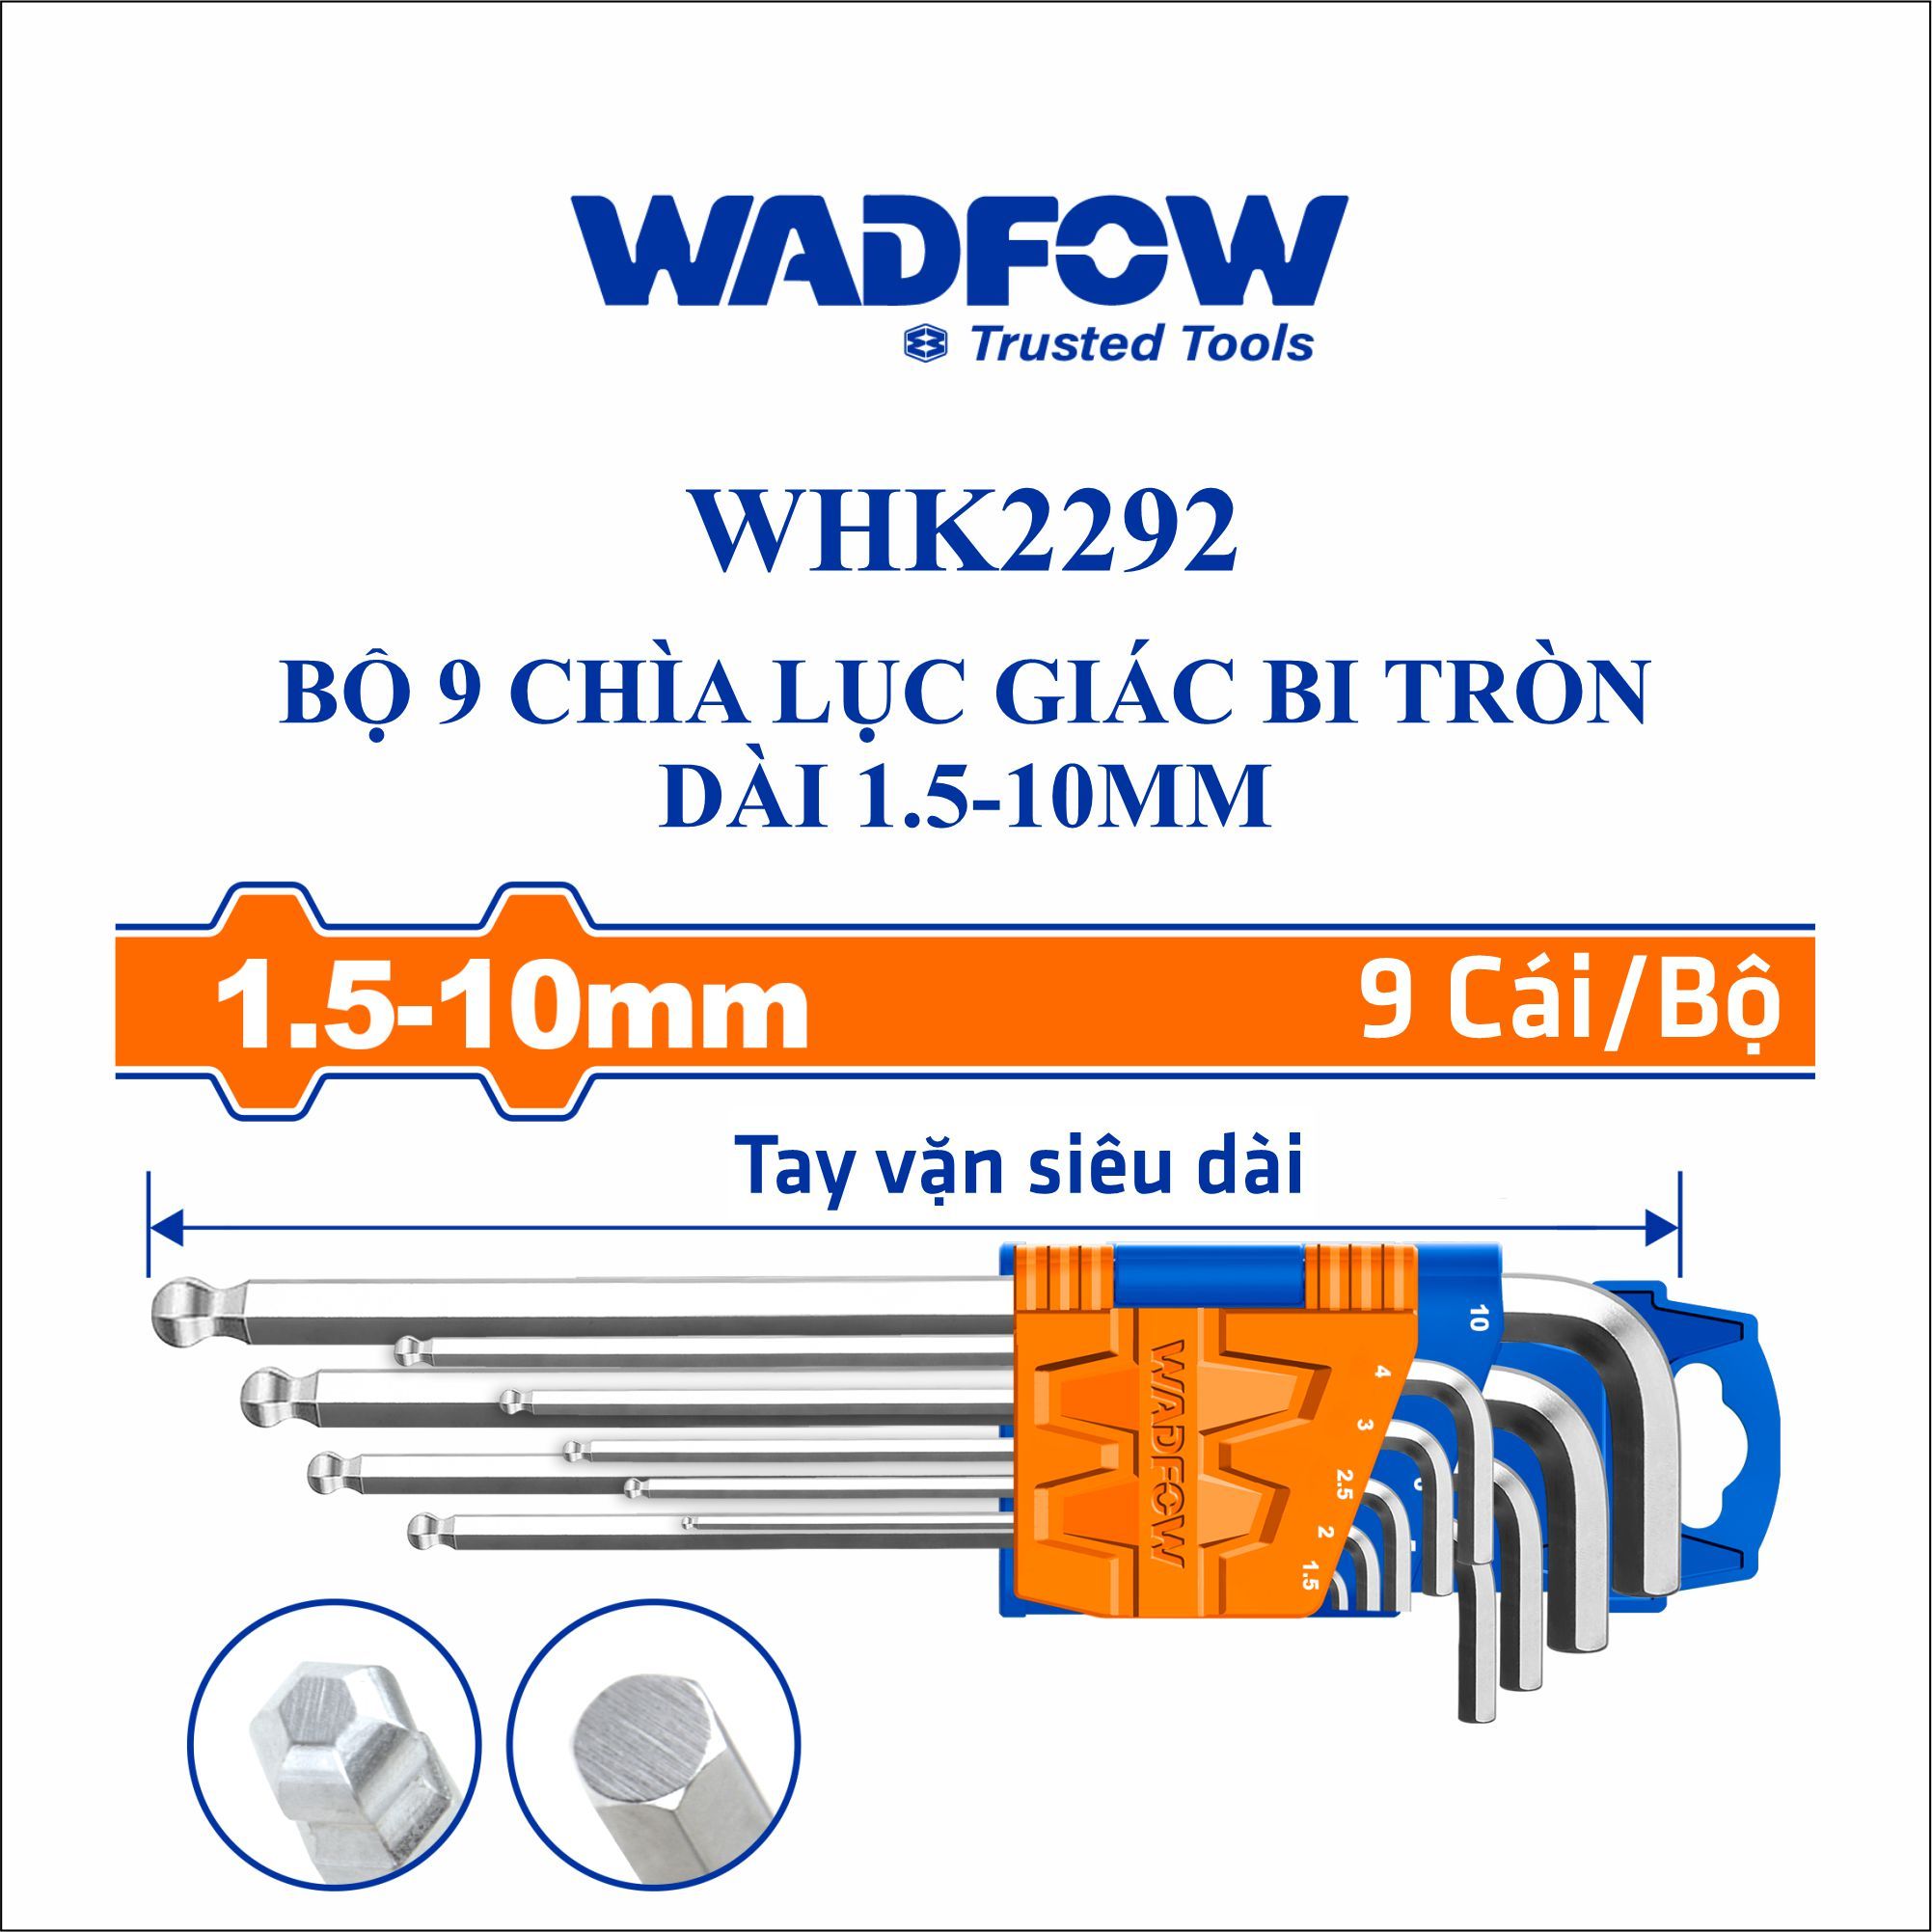  Bộ 9 chìa lục giác bi tròn dài 1.5-10mm WADFOW WHK2292 